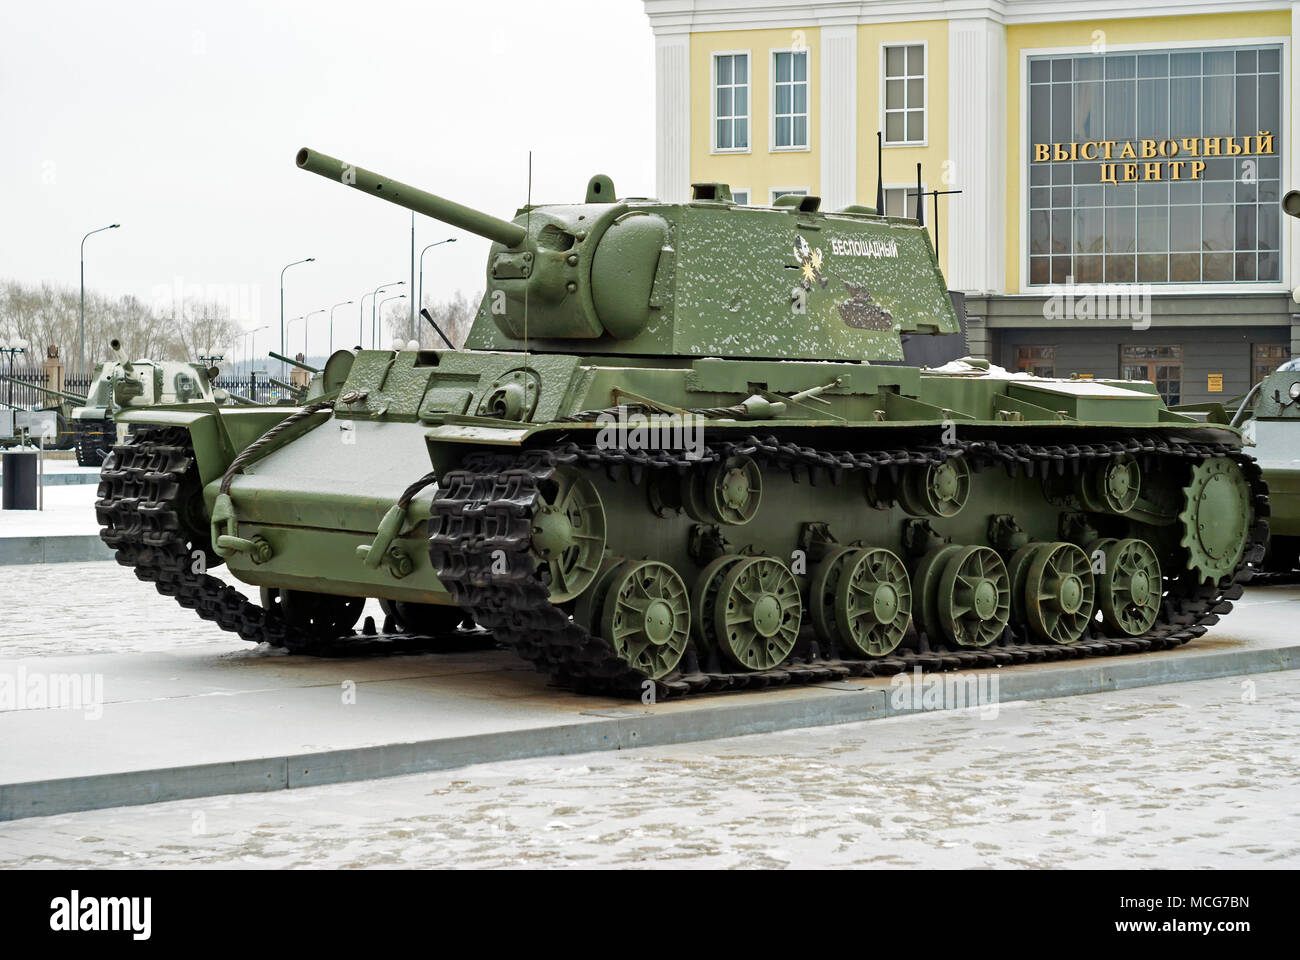 La Russie, VERKHNYAYA PYSHMA - 12 février. Char lourd soviétique : 2018 KV-1 au musée d'équipements militaires, l'inscription sur l'armure : 'merciless' Banque D'Images